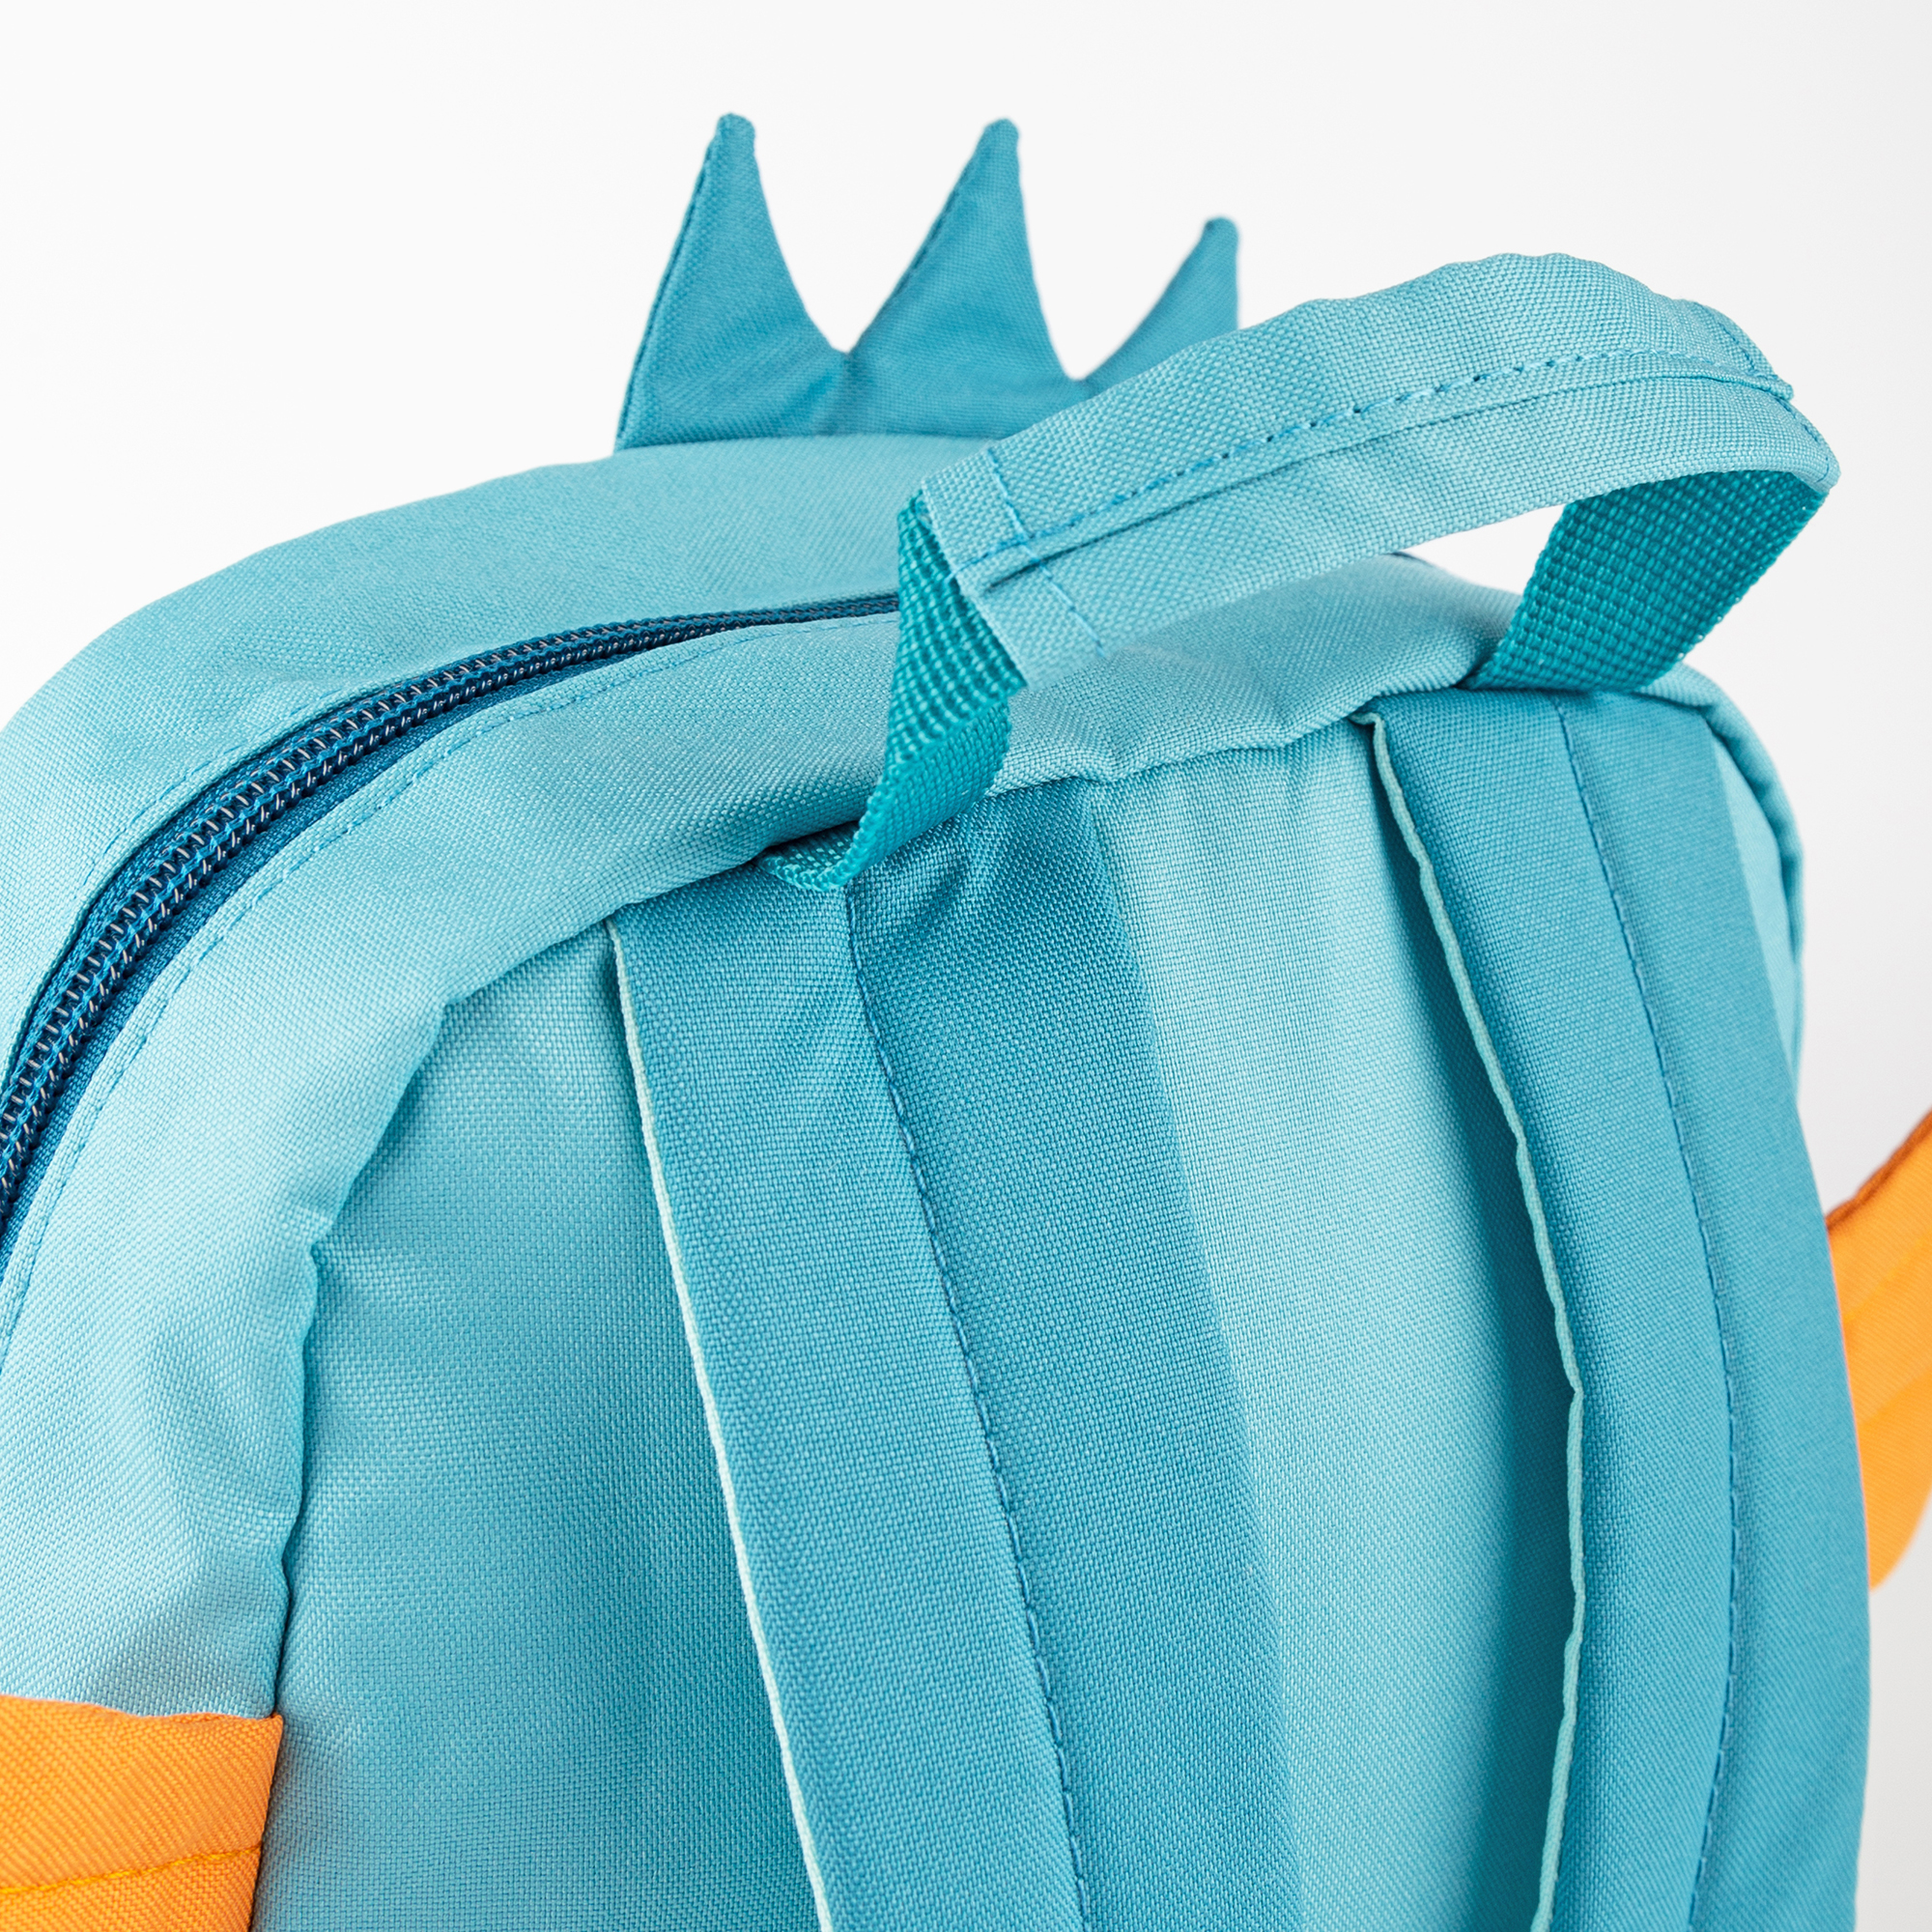 Children's backpack little dragon